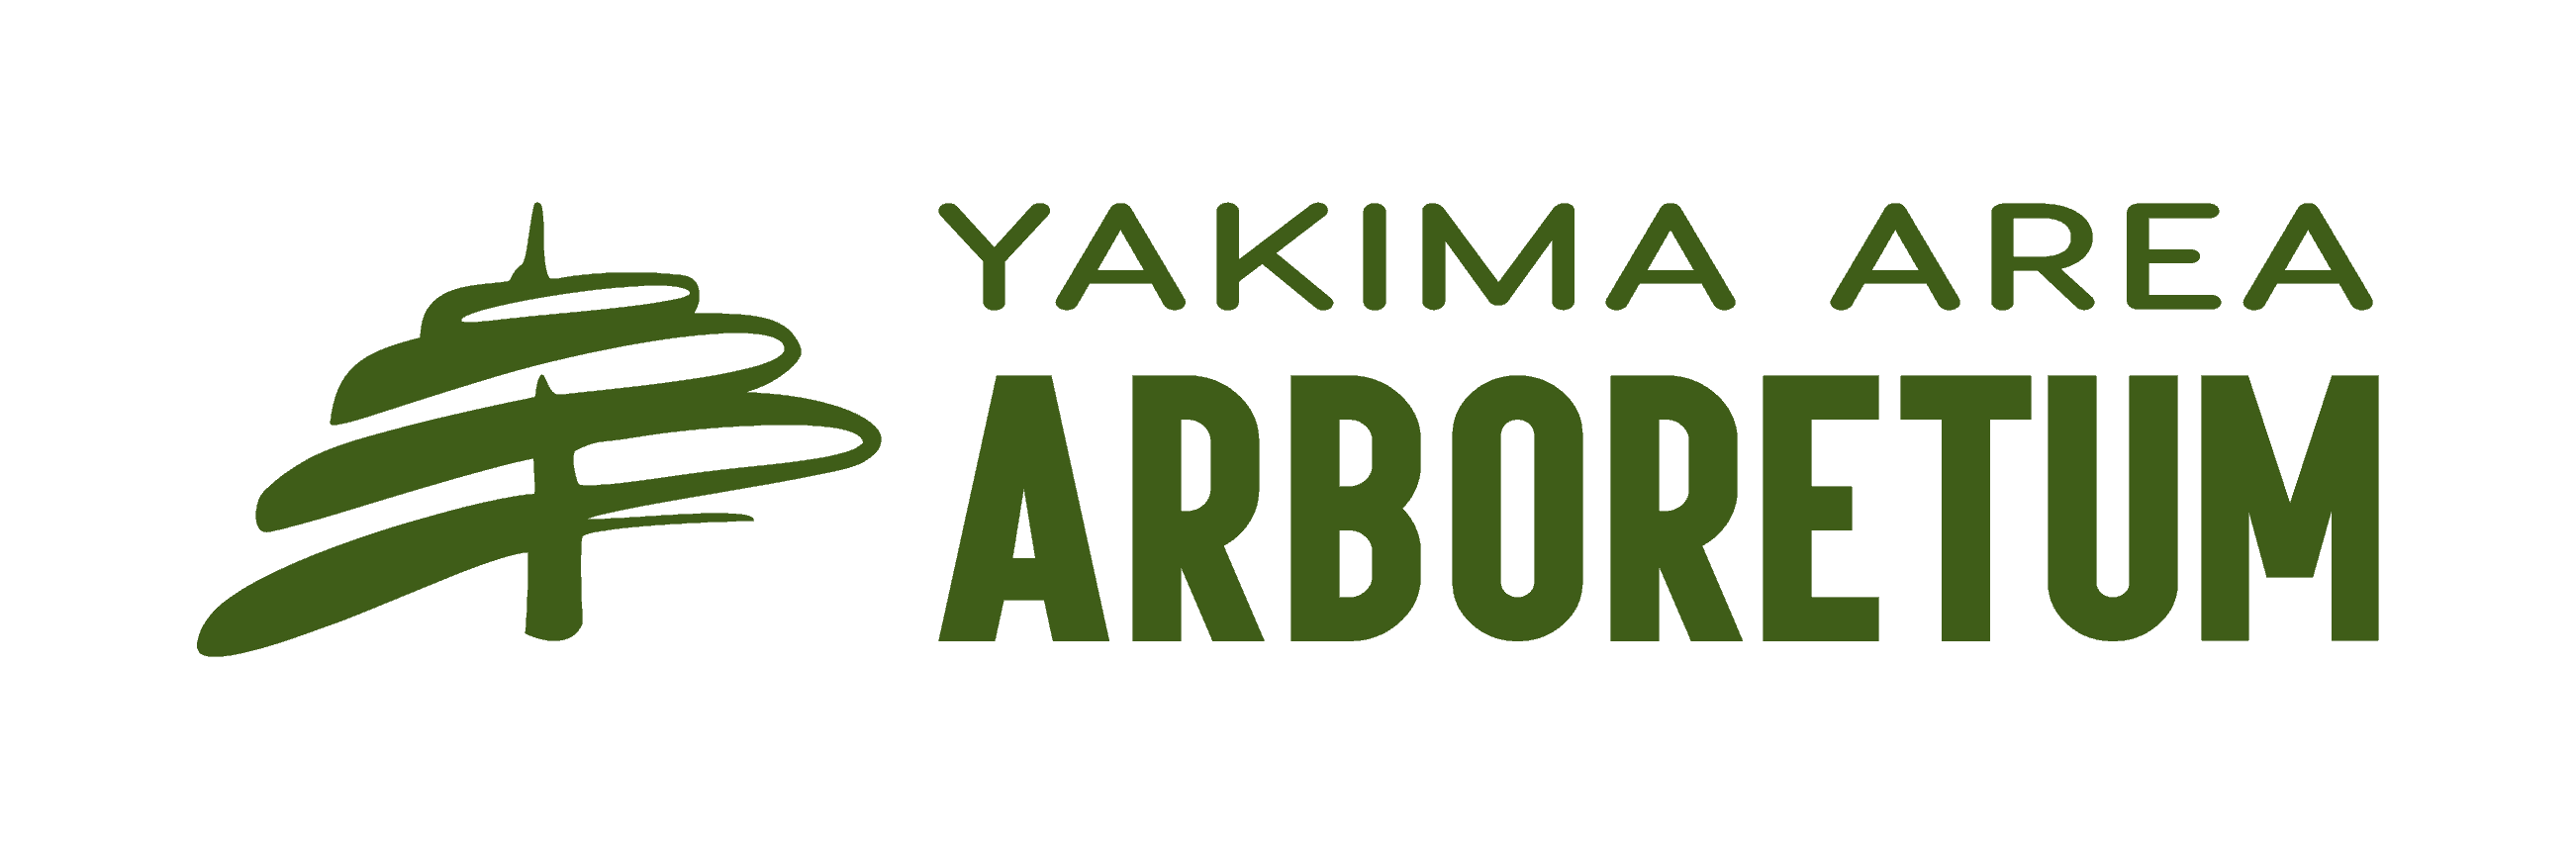 Yakima Arboretum